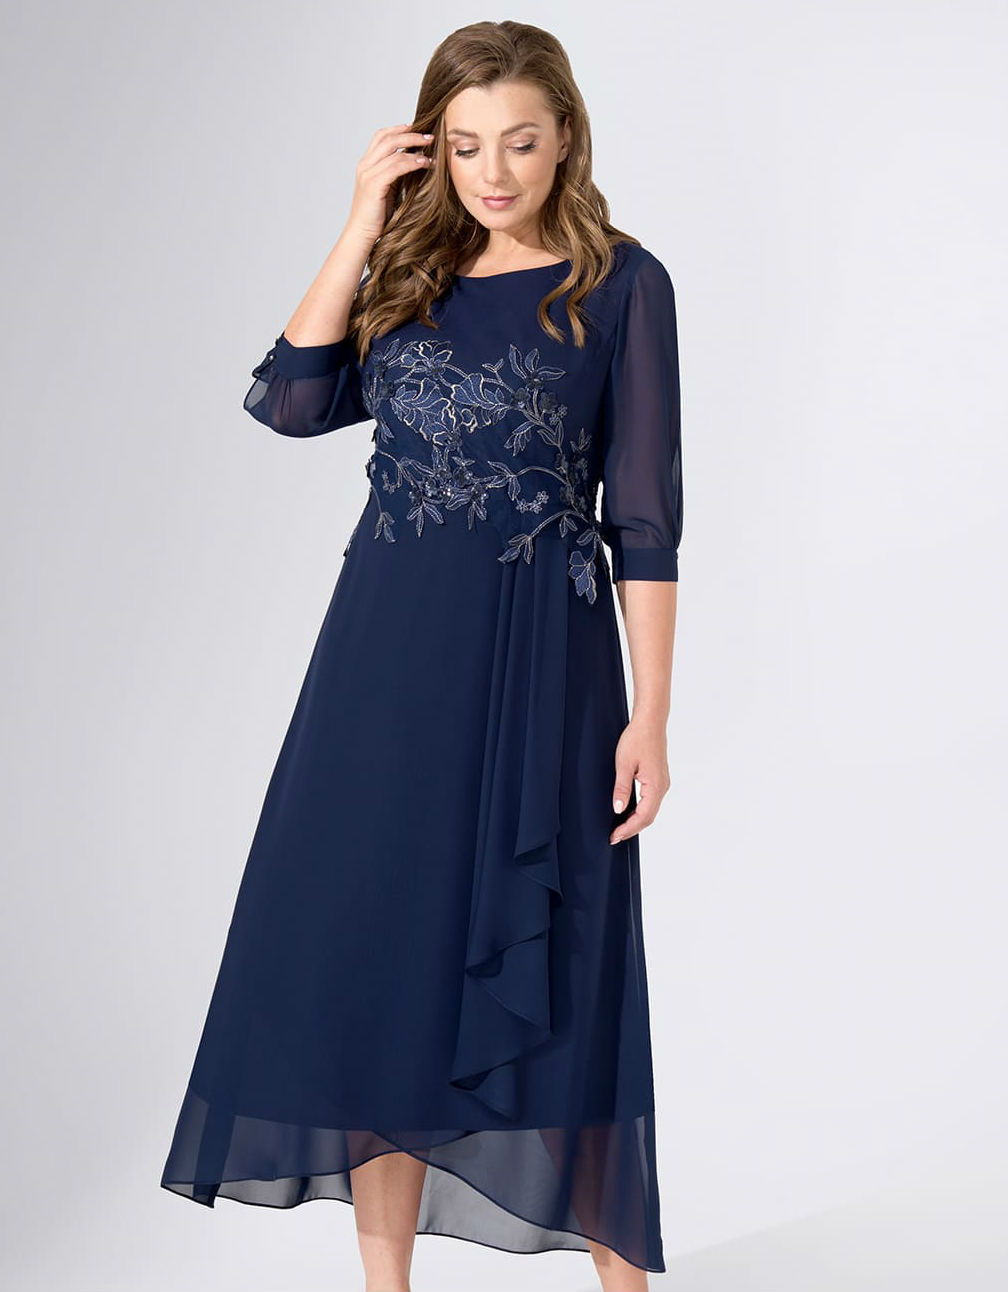 Длинное платье с декором и аппликацией, темно-синее